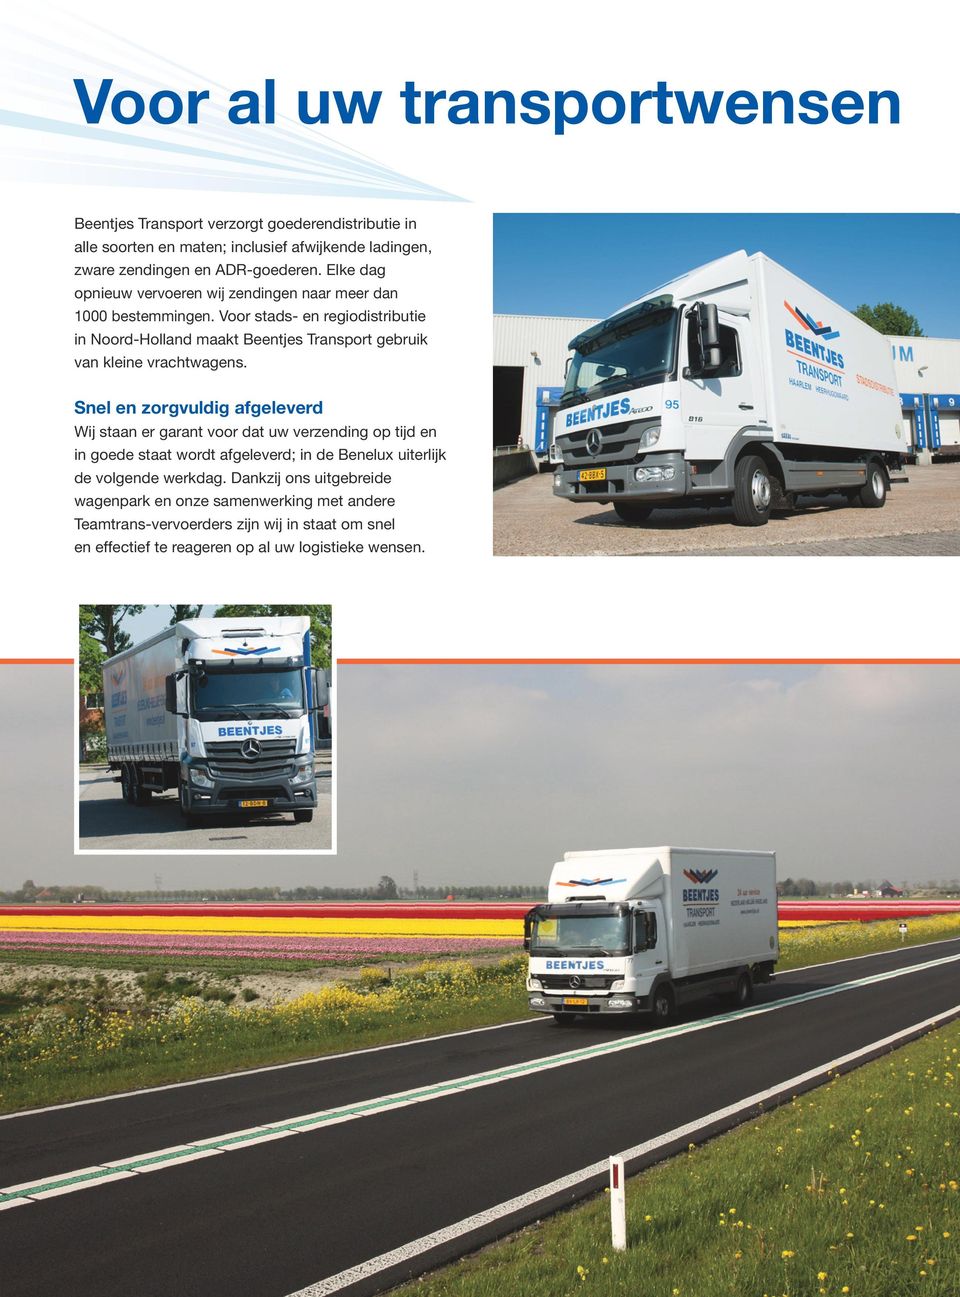 Voor stads- en regiodistributie in Noord-Holland maakt Beentjes Transport gebruik van kleine vrachtwagens.